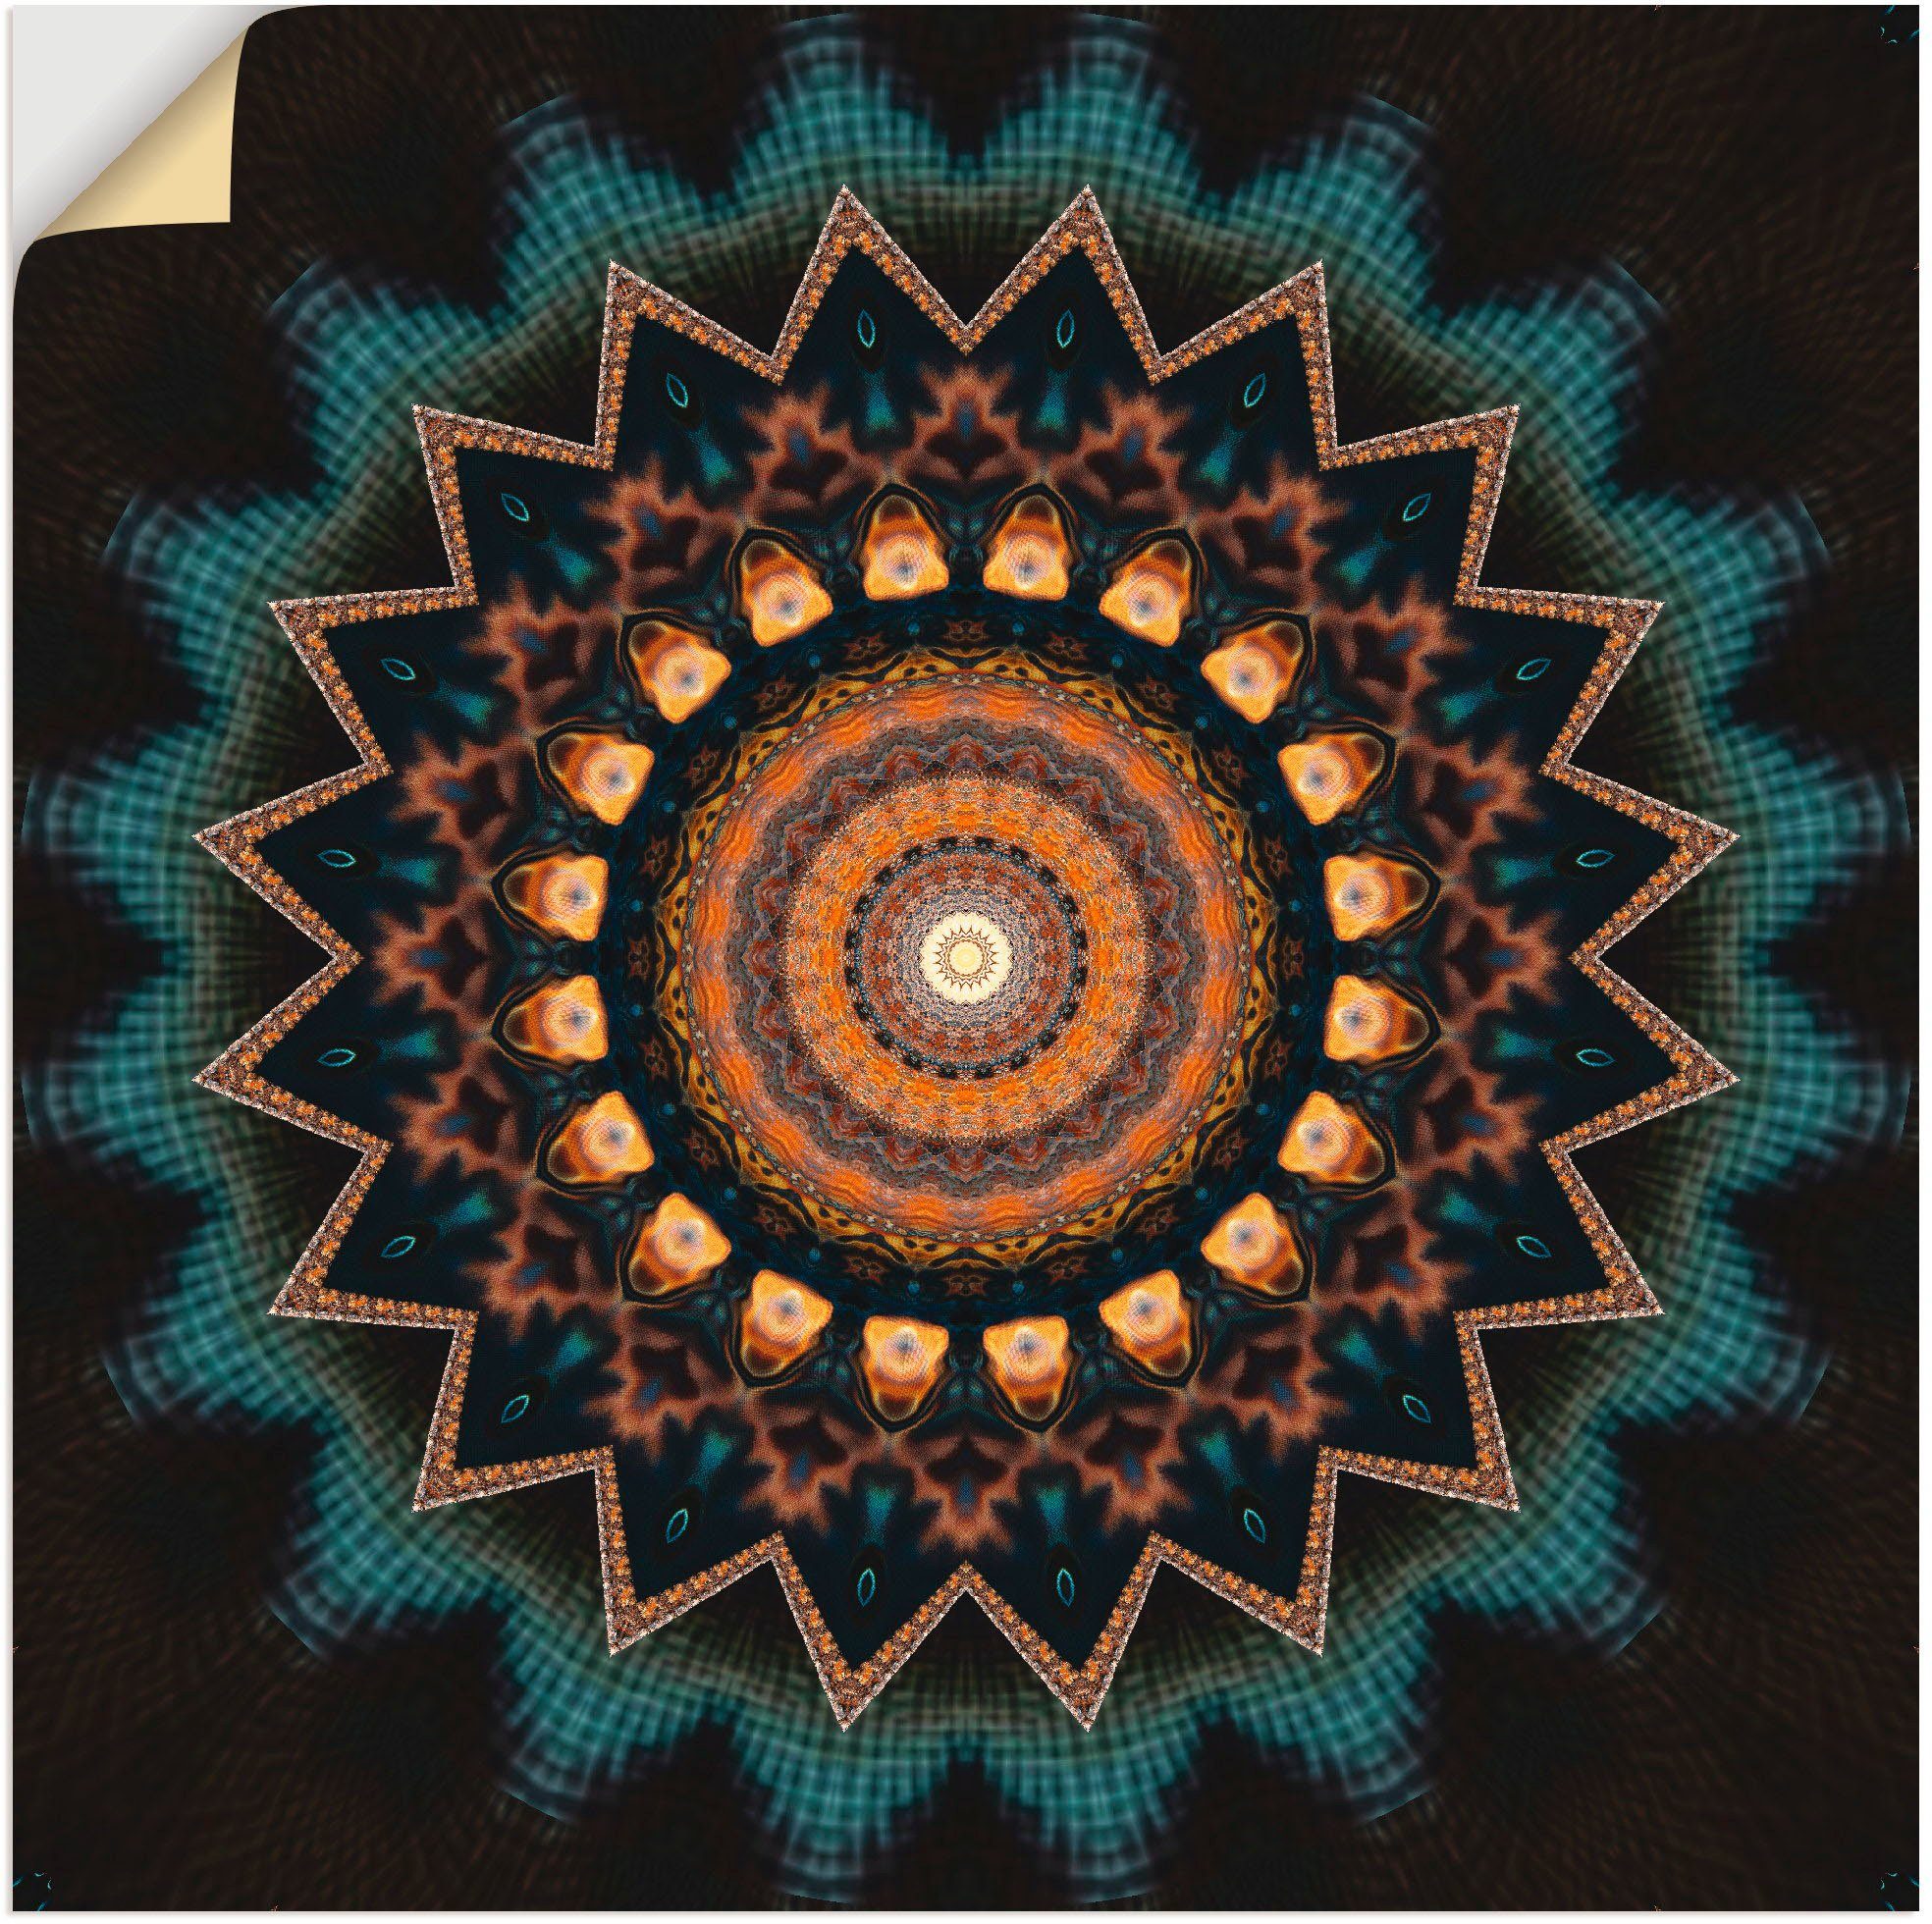 Artland Artprint Mandala kosmisch bewustzijn in vele afmetingen & productsoorten - artprint van aluminium / artprint voor buiten, artprint op linnen, poster, muursticker / wandfoli